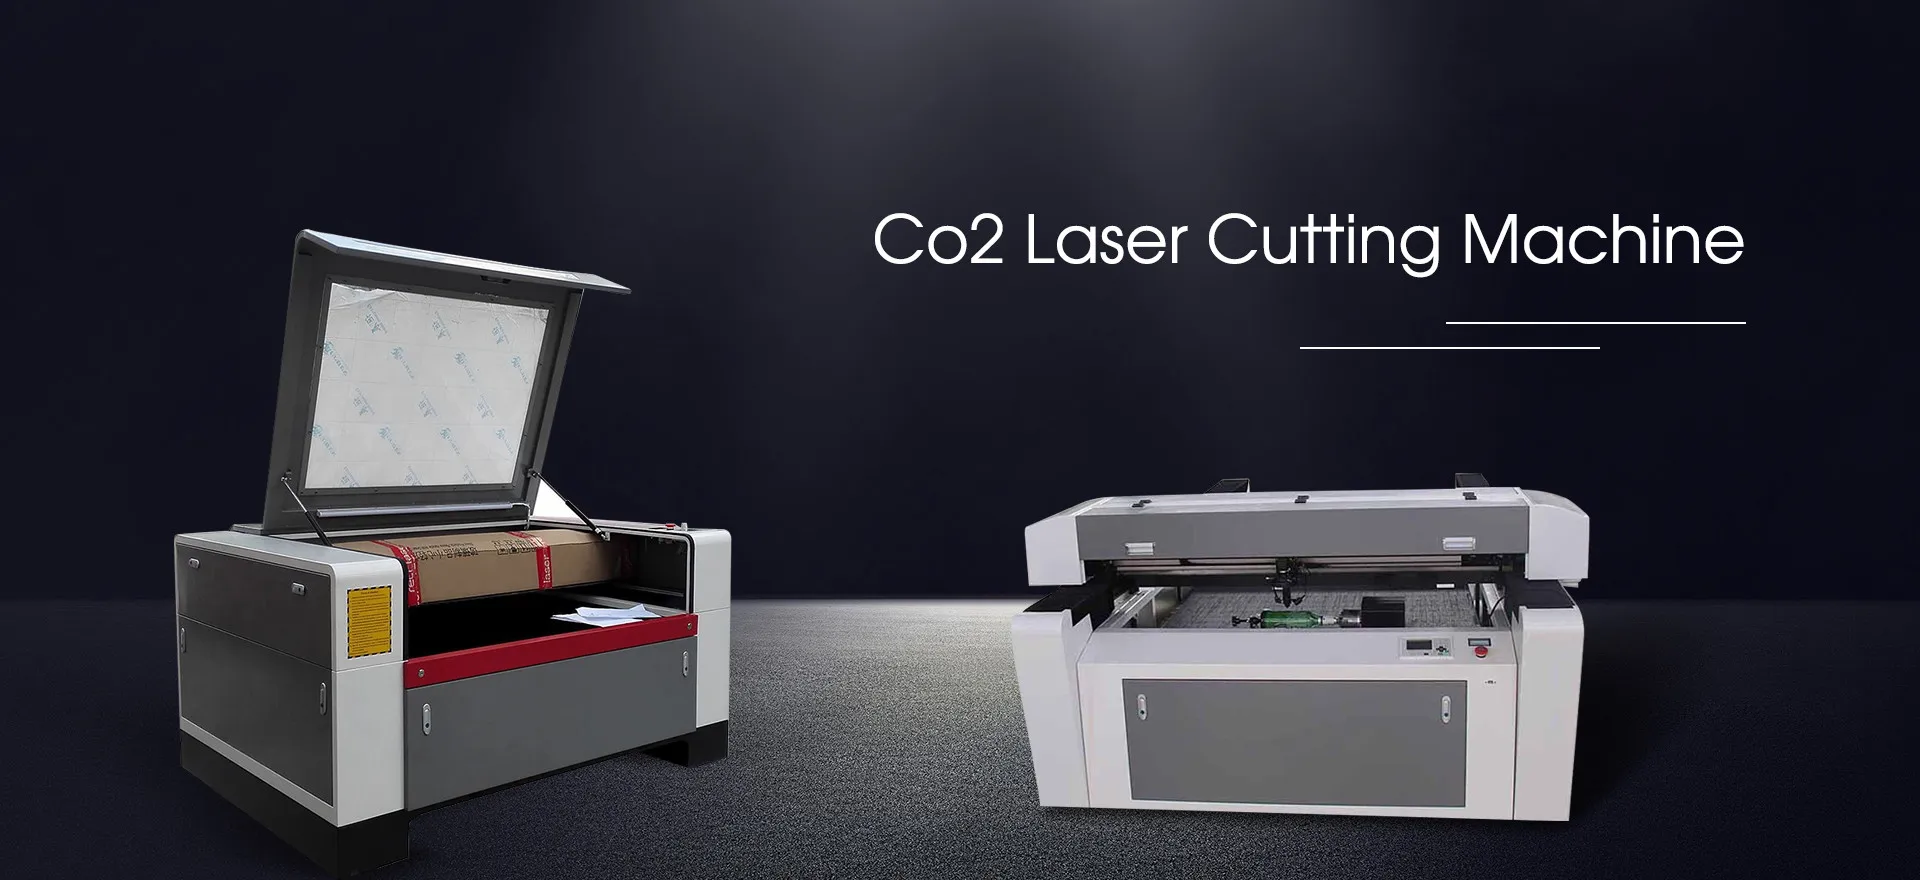 Kitajski proizvajalci CO2 laserskih označevalnih strojev